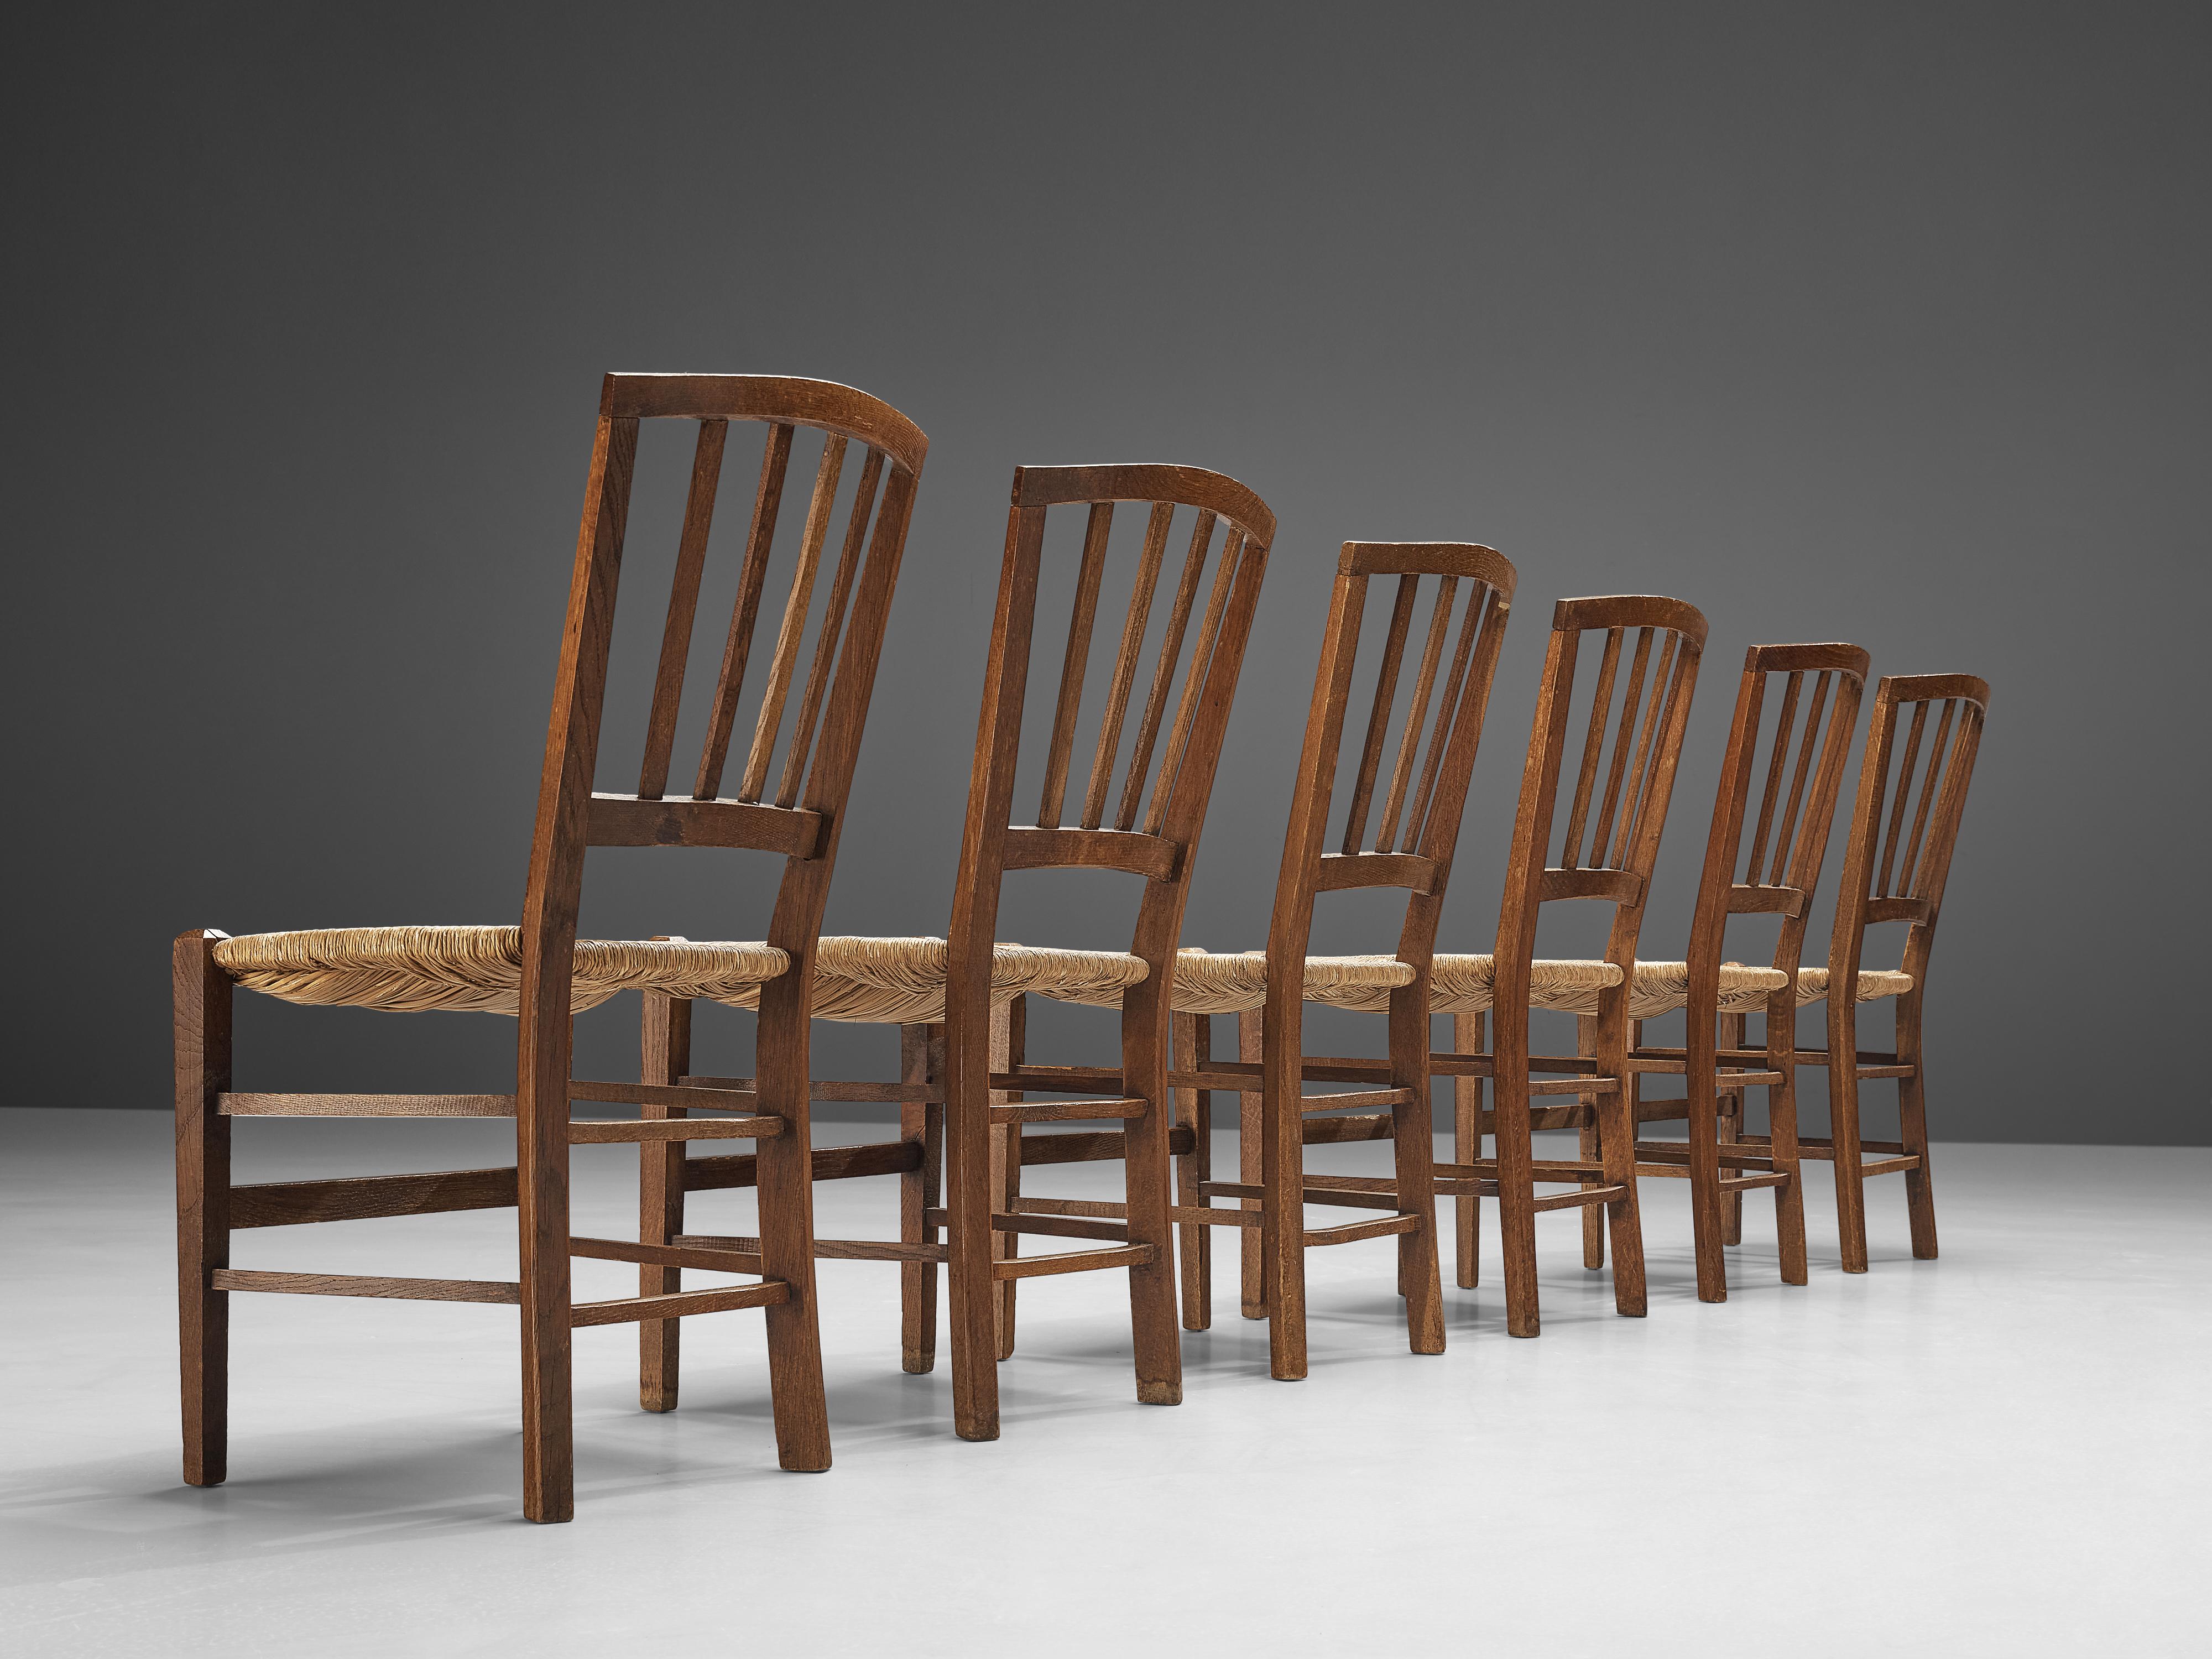 Chaises de salle à manger, chêne, corde en papier, Pays-Bas, années 1960

Ensemble de chaises de salle à manger hollandaises en chêne et corde de papier, fabriquées dans les années 1960. Ces chaises de salle à manger sont dotées d'un dossier